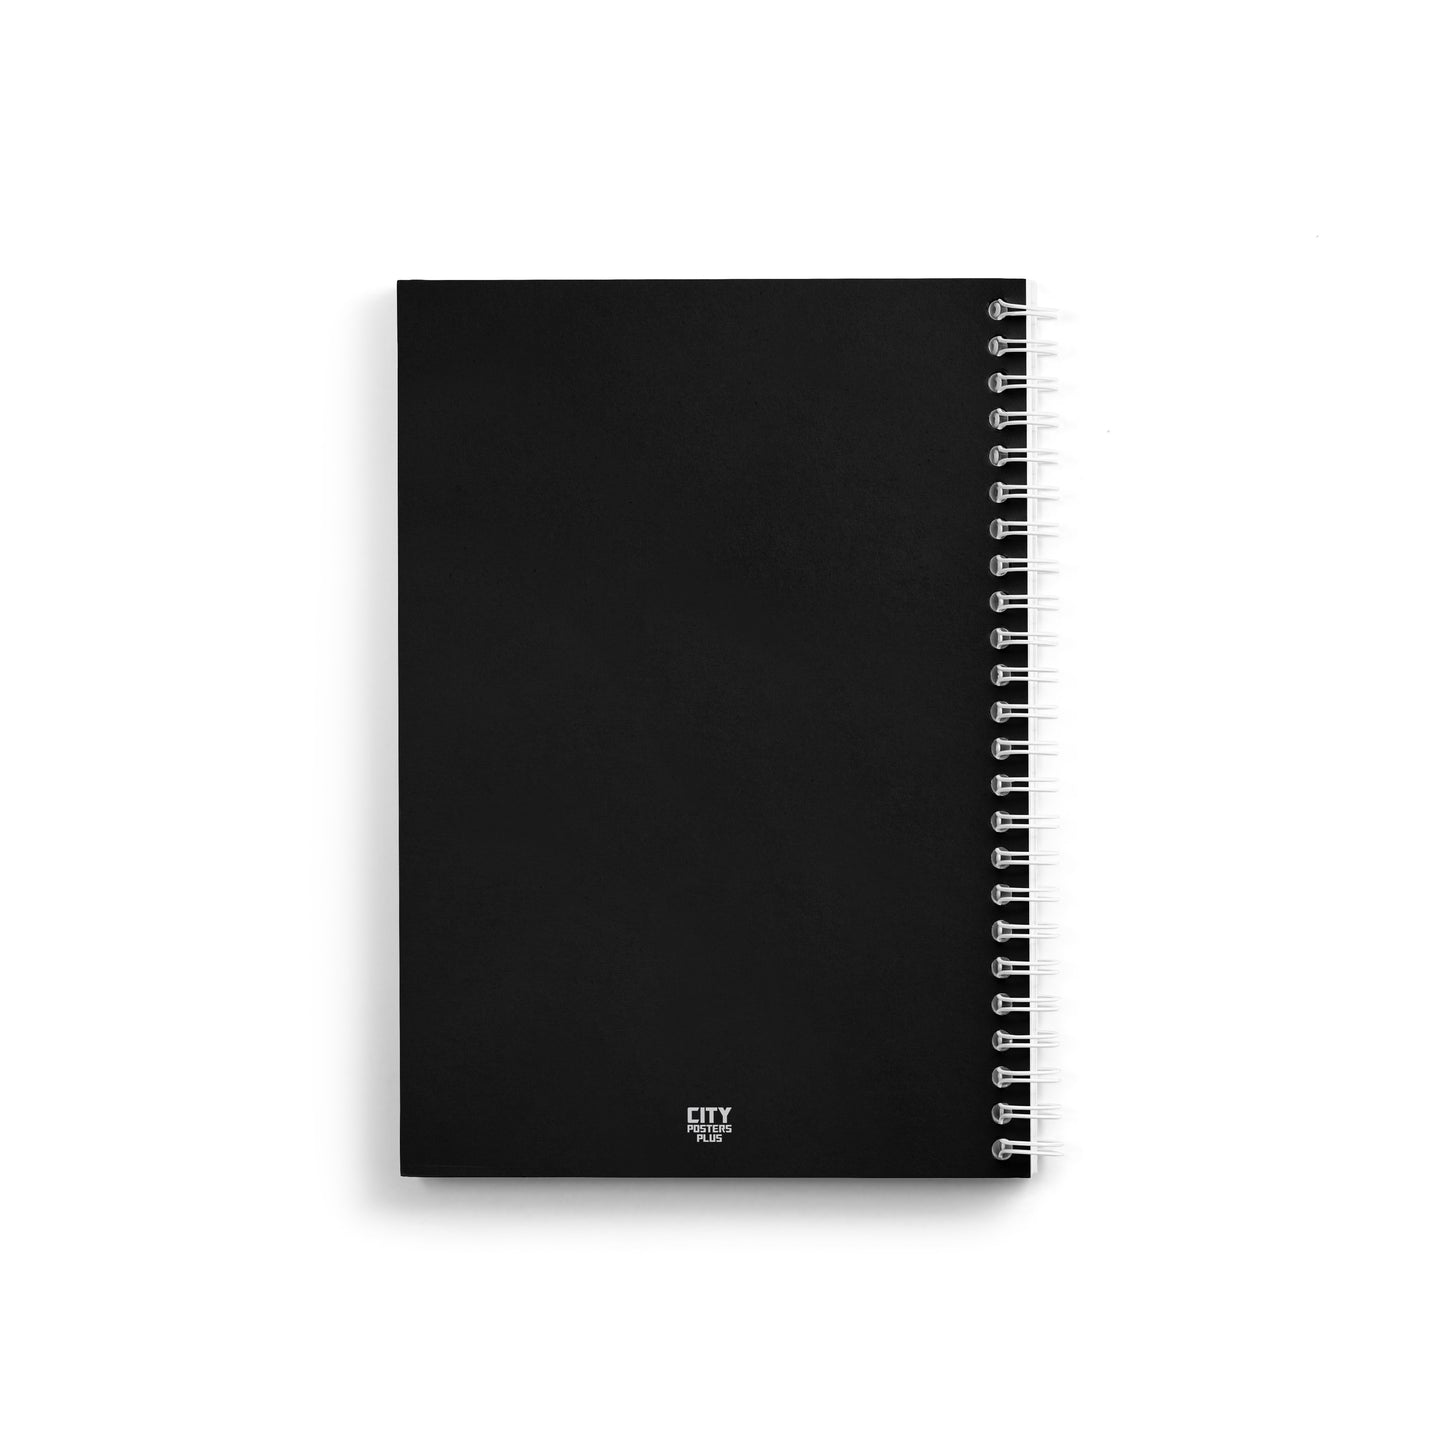 Chinnakkampalayam Notebook (A5 Size, 100 Pages, Ruled)